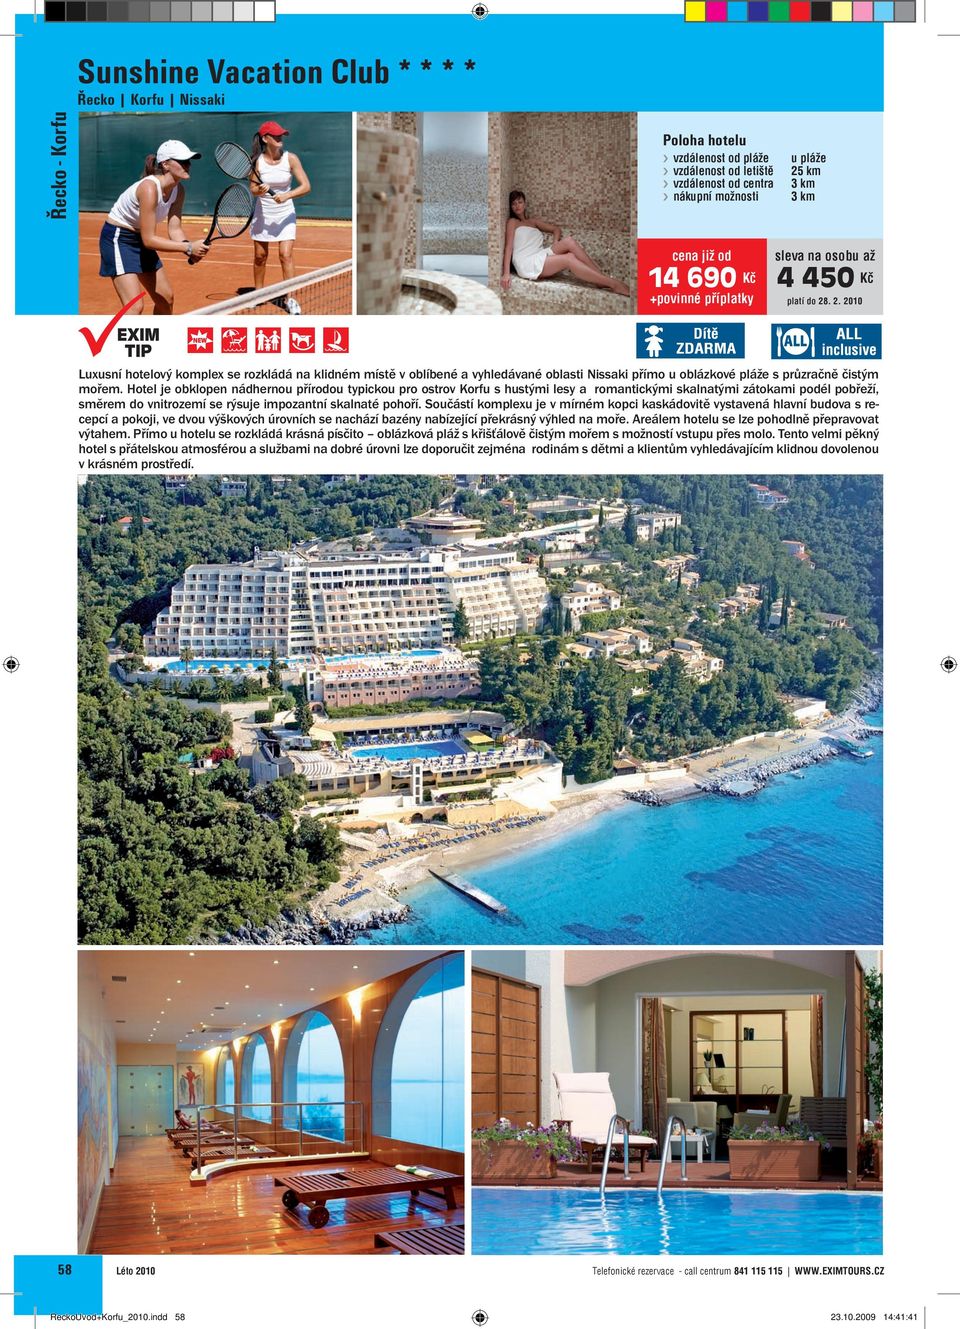 Hotel je obklopen nádhernou přírodou typickou pro ostrov Korfu s hustými lesy a romantickými skalnatými zátokami podél pobřeží, směrem do vnitrozemí se rýsuje impozantní skalnaté pohoří.